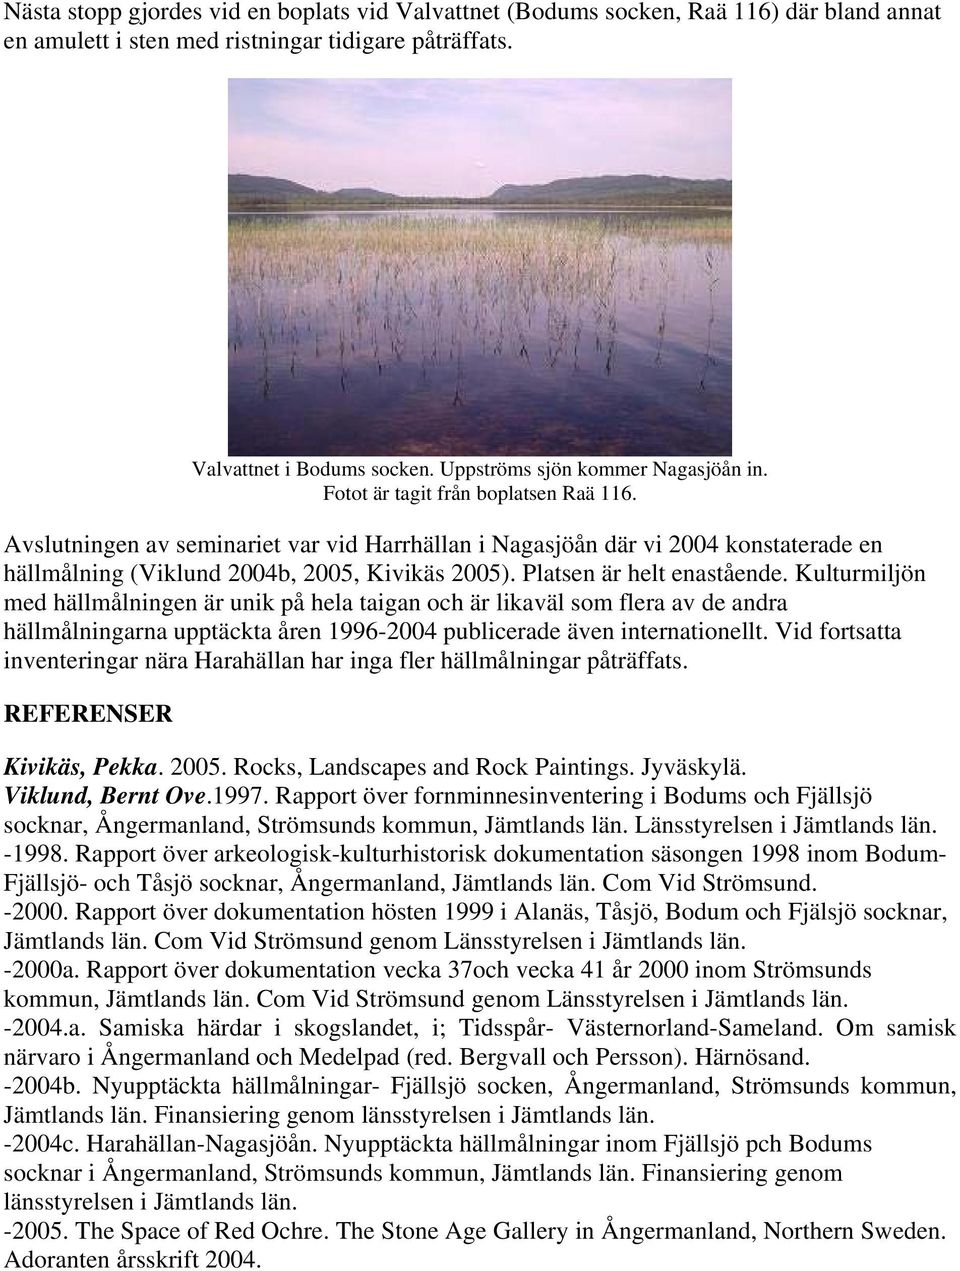 Avslutningen av seminariet var vid Harrhällan i Nagasjöån där vi 2004 konstaterade en hällmålning (Viklund 2004b, 2005, Kivikäs 2005). Platsen är helt enastående.